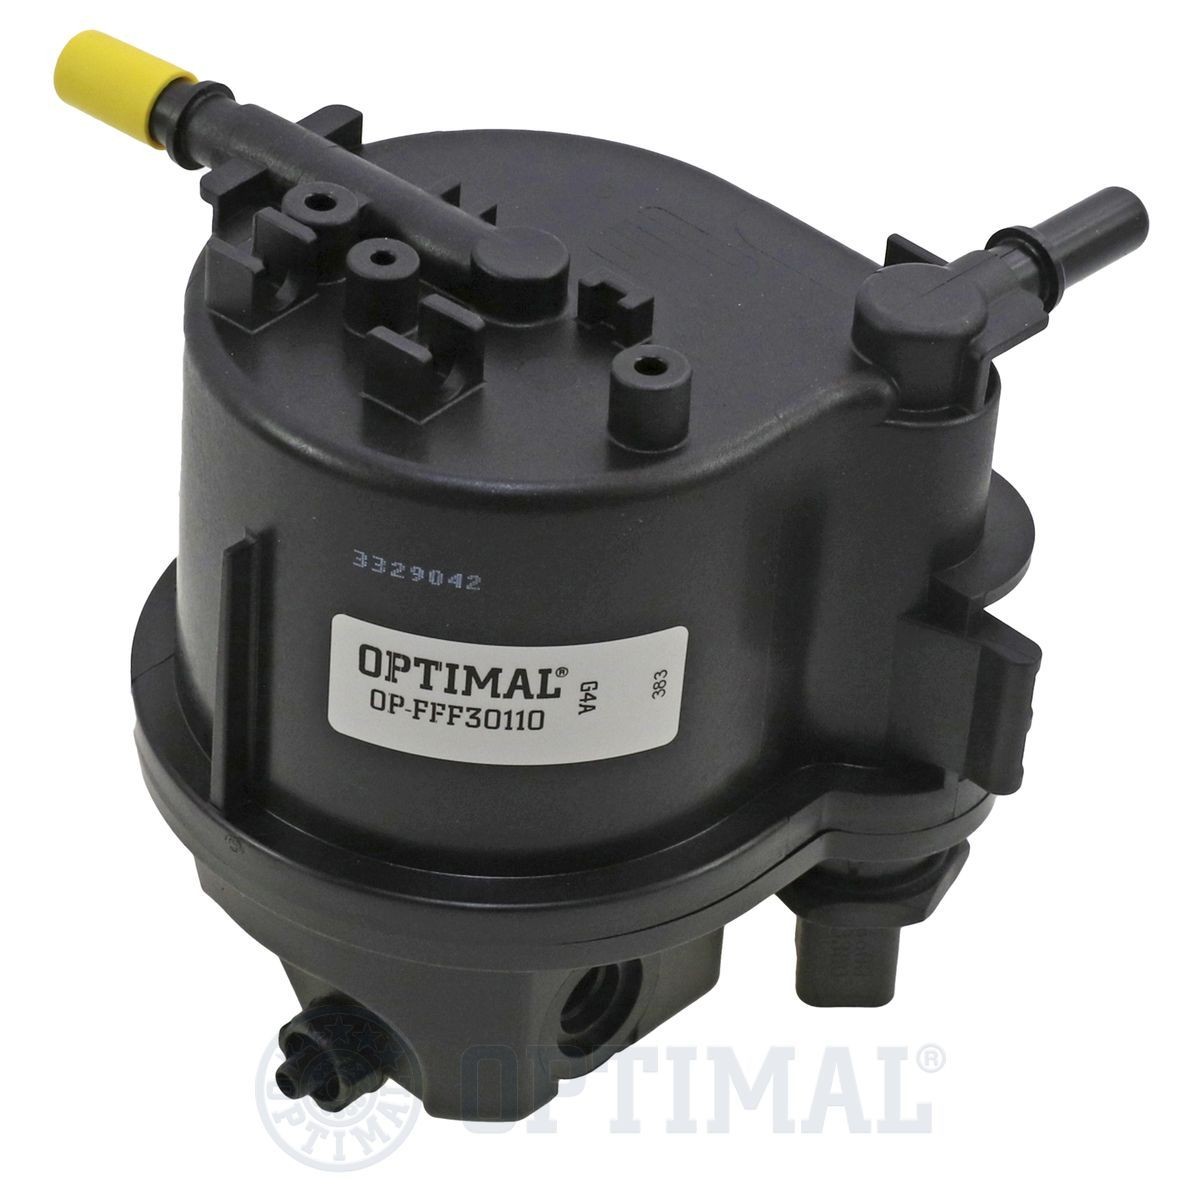 OPTIMAL OP-FFF30110 Fuel filter 1484409